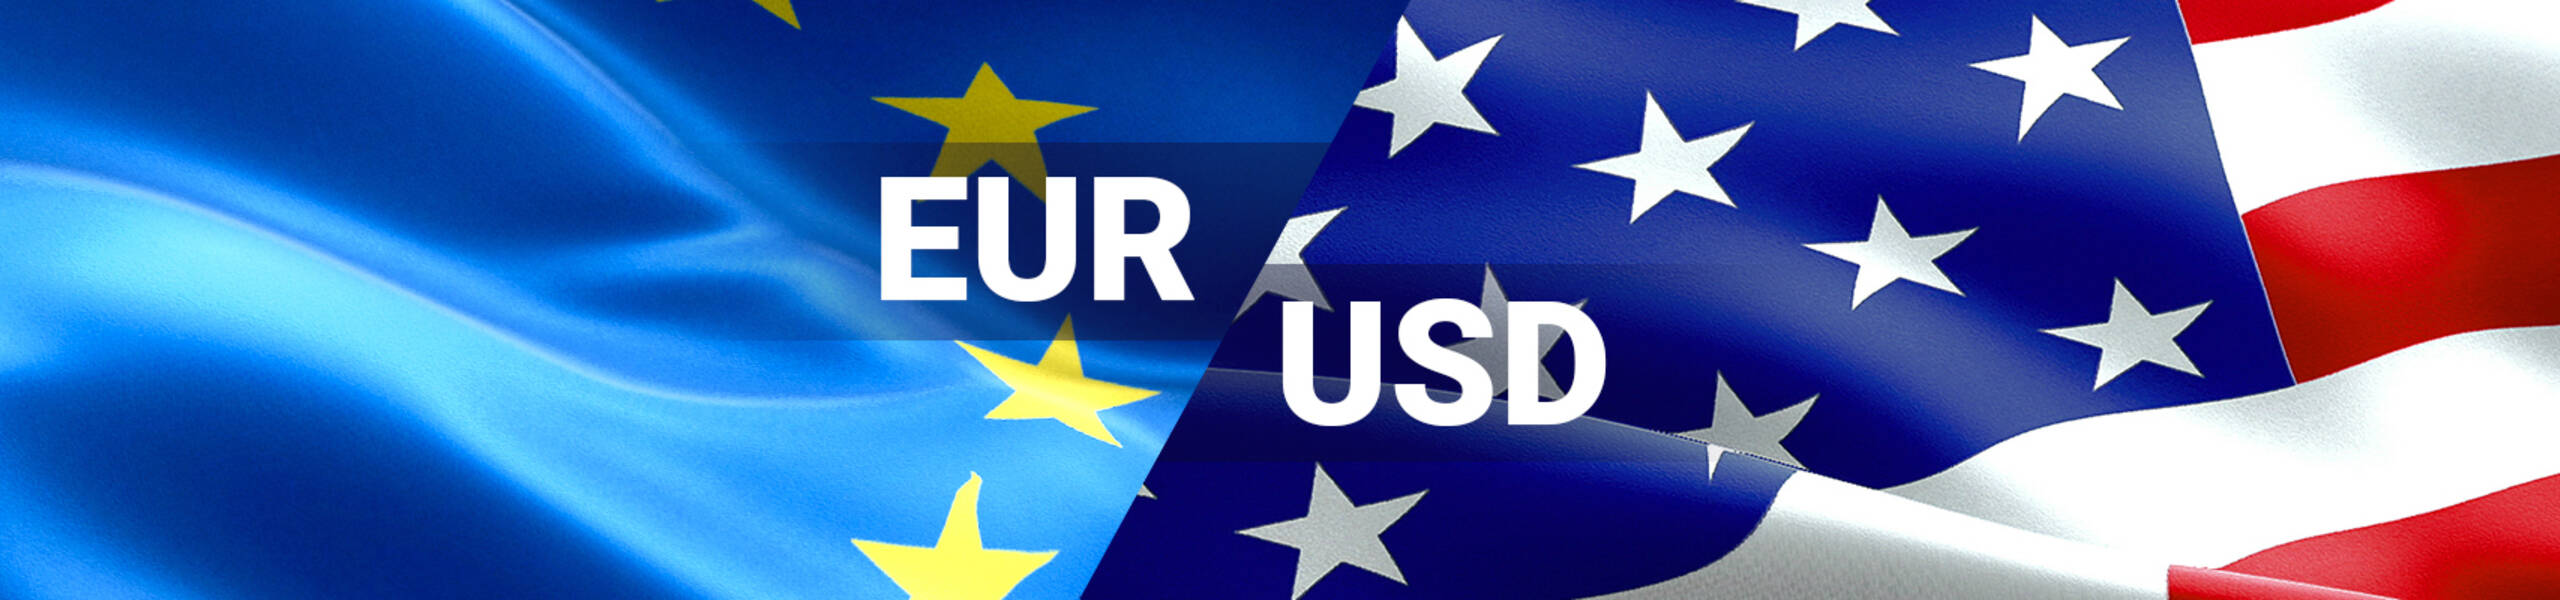 EUR/USD con objetivo bajista en la apertura anual